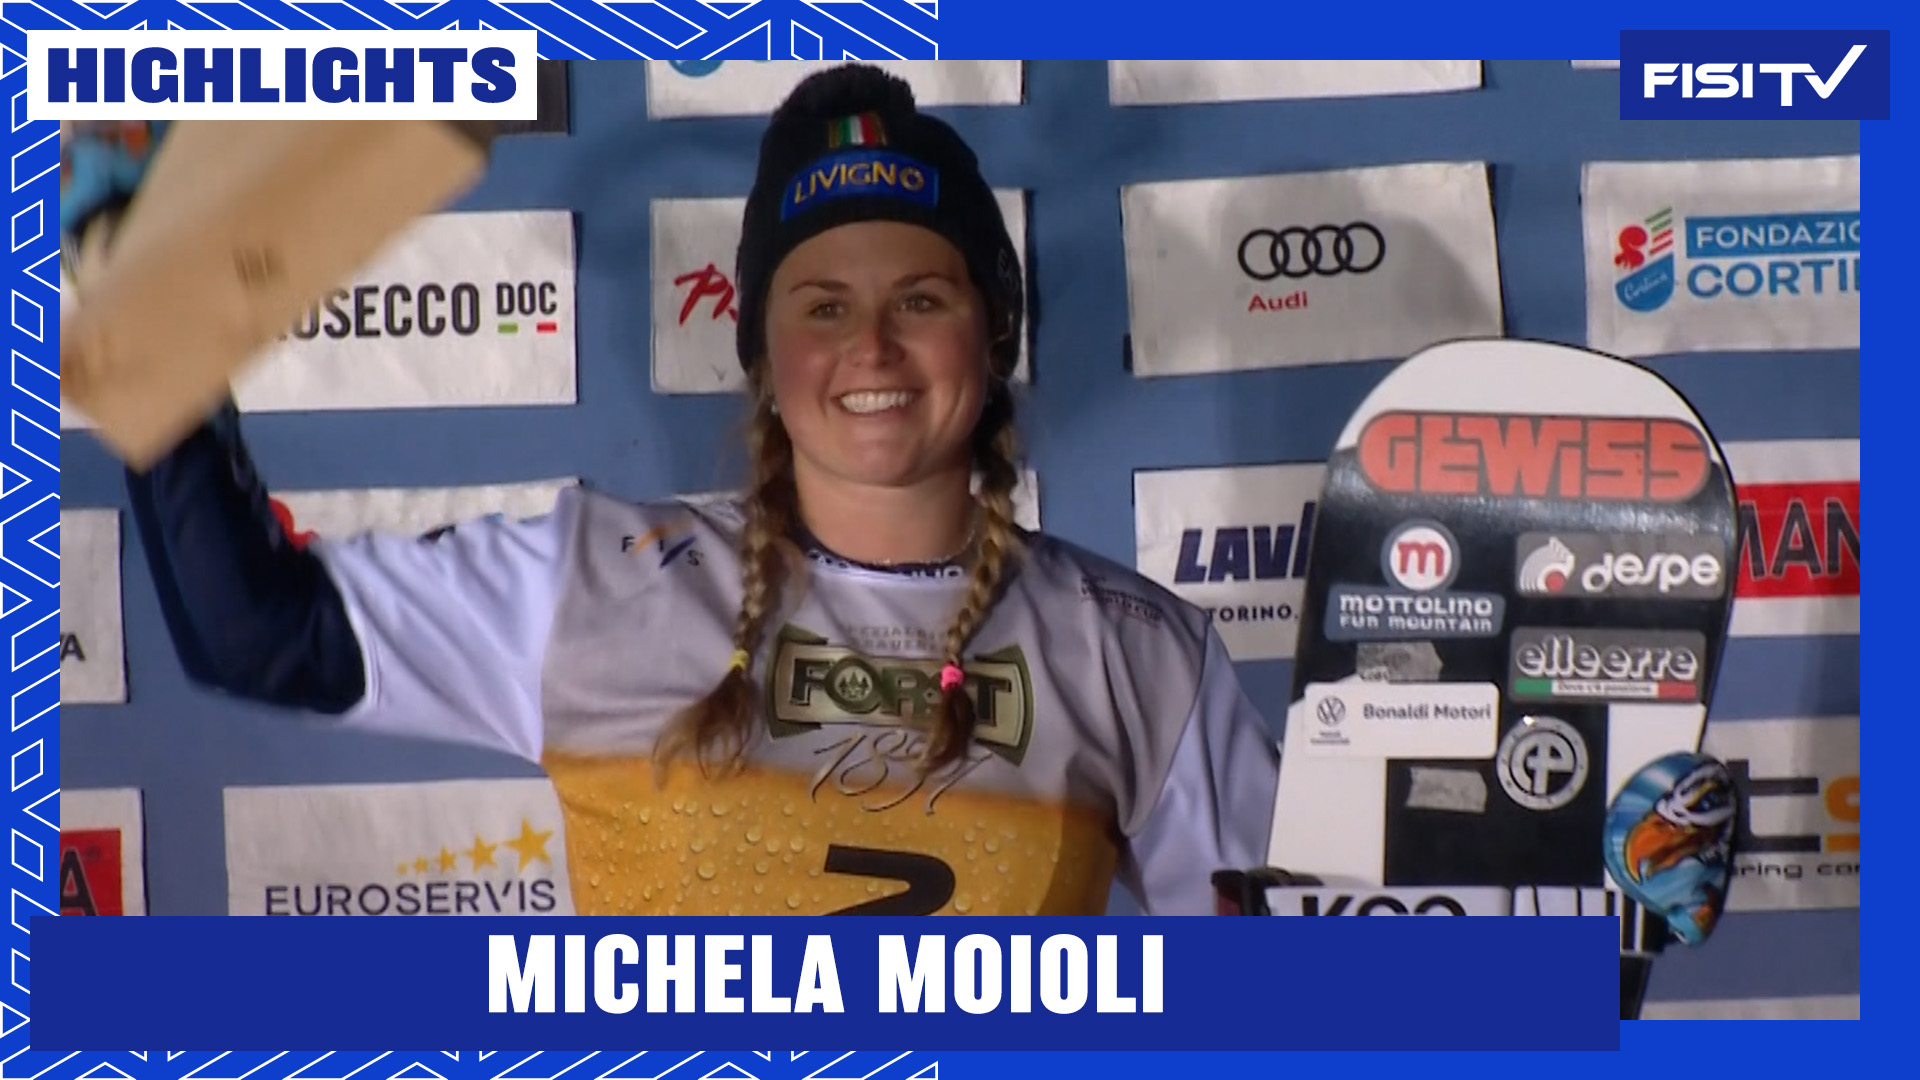 Michela Moioli si conferma sul podio anche a Cortina | FISI TV